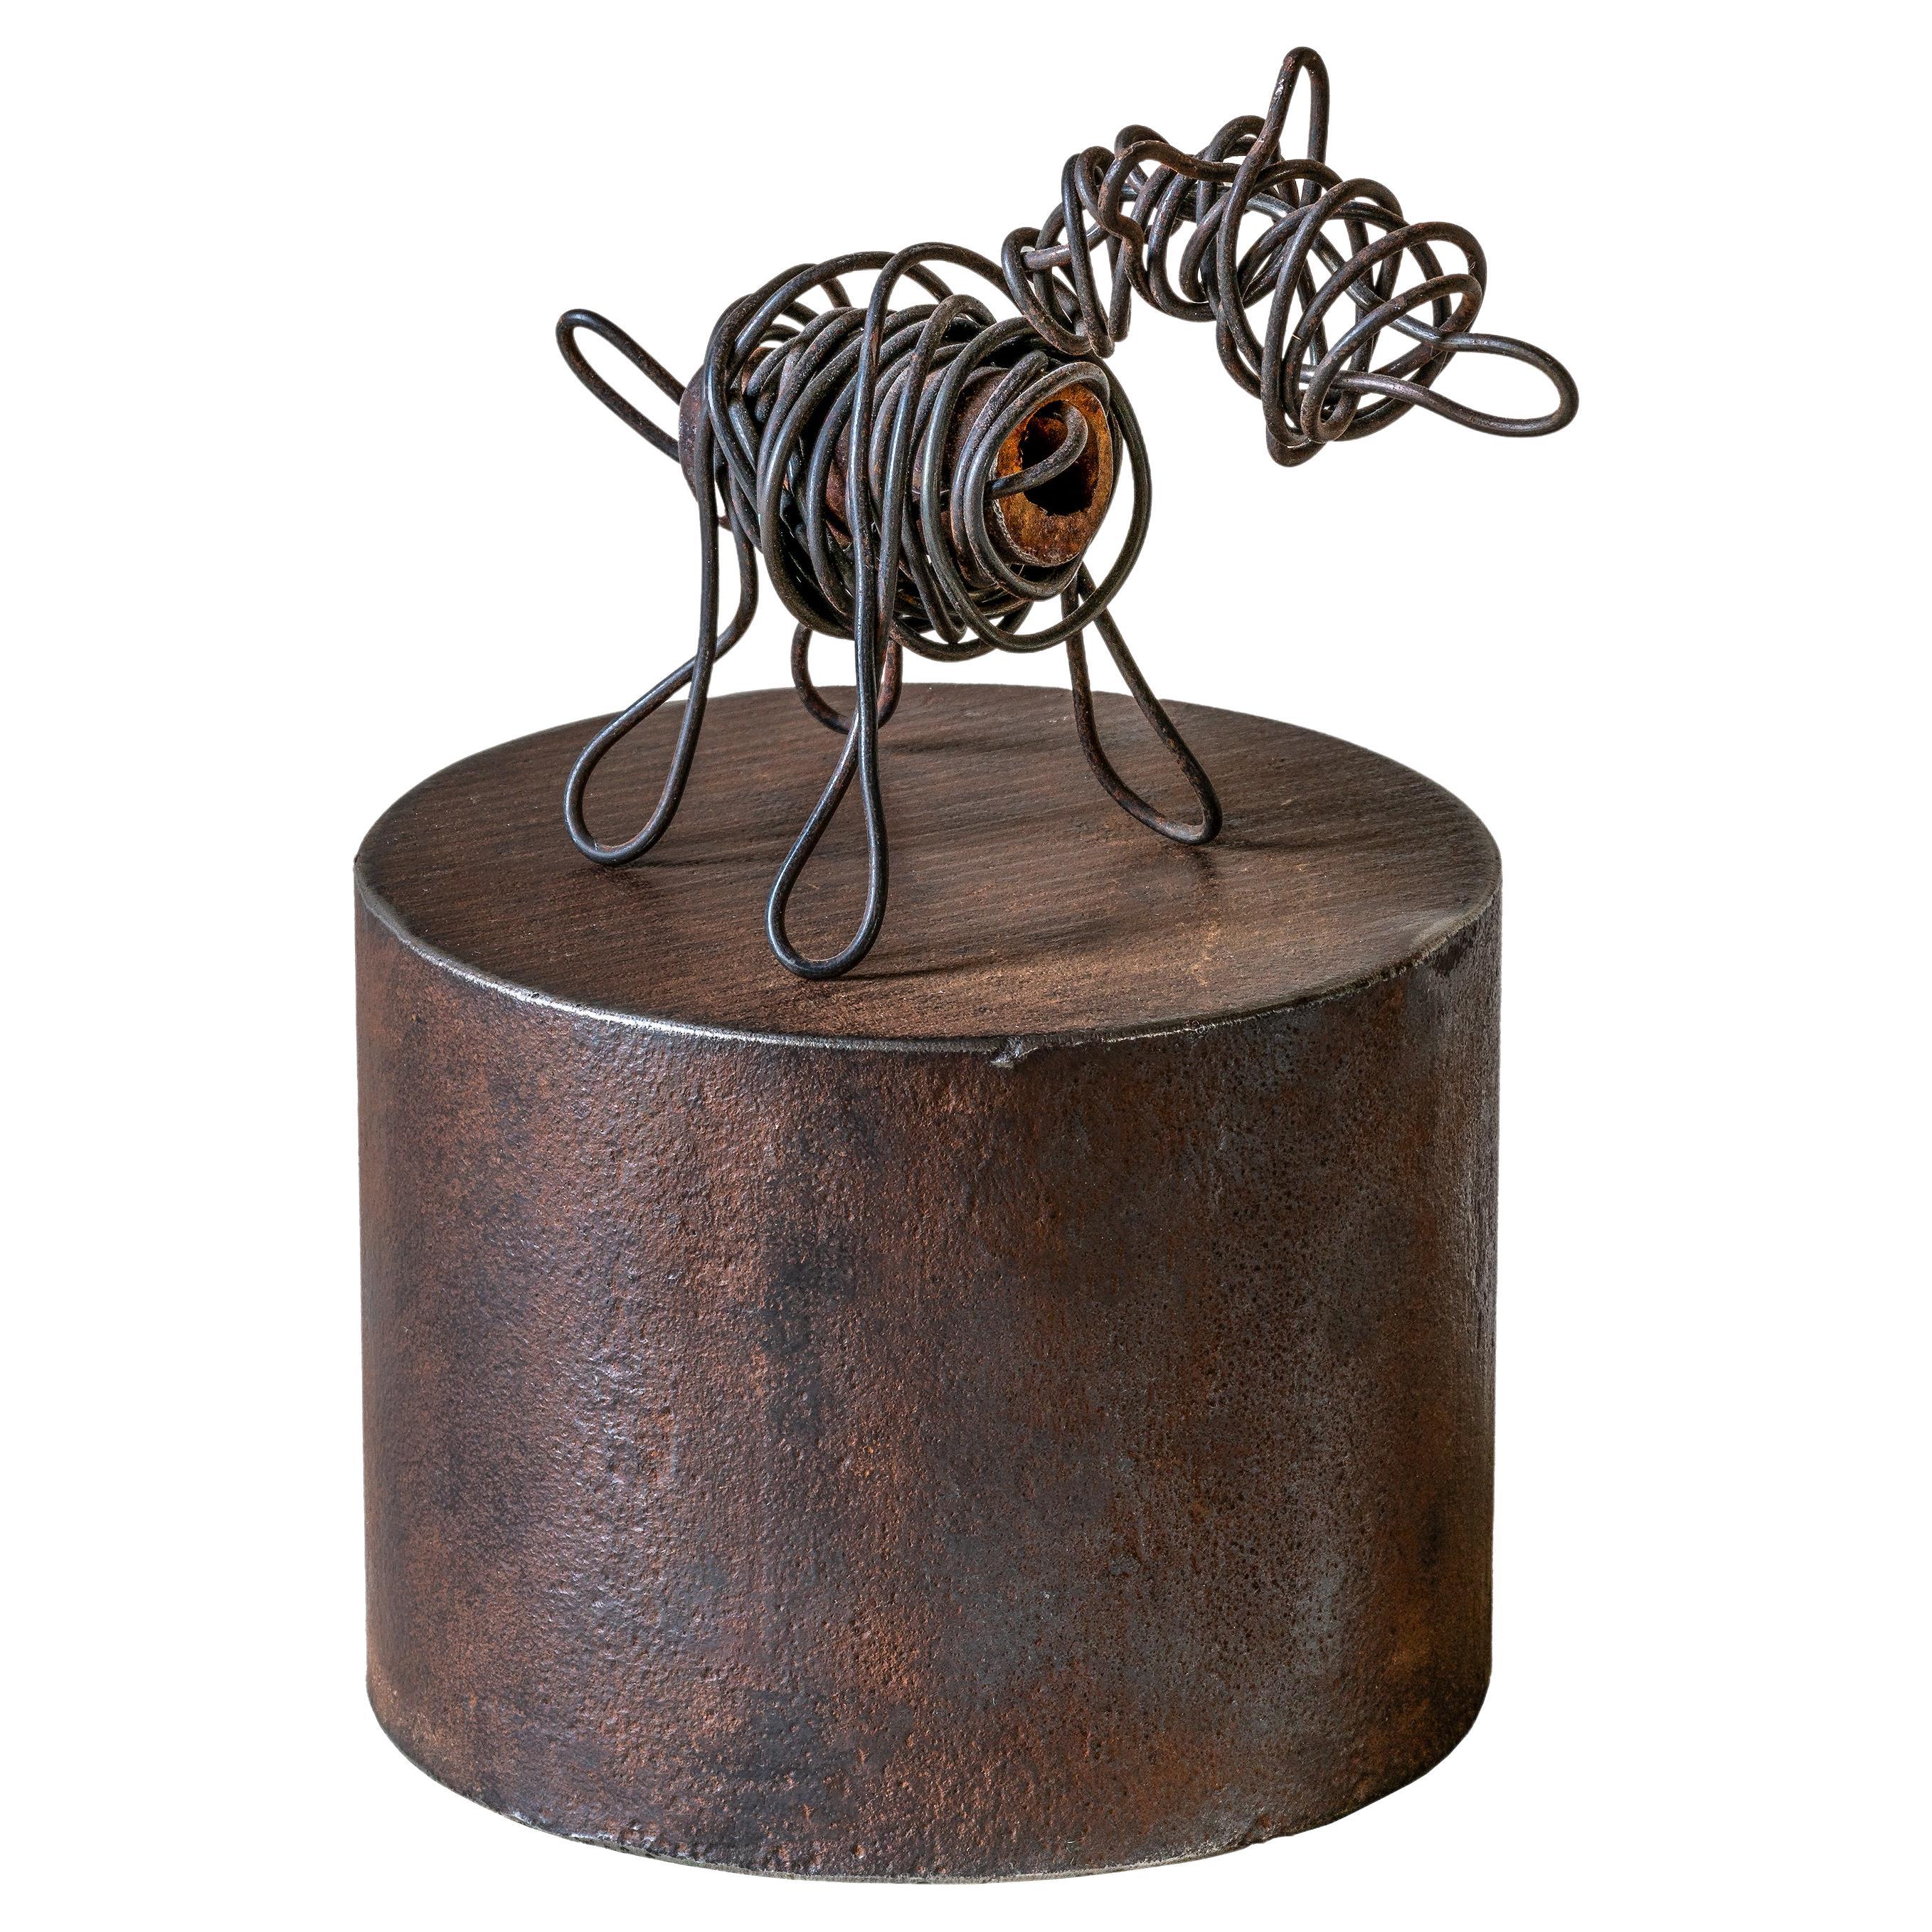 Jim Rose – Drahthund, wiederverwendete, schwere Drahthund-Skulptur, zylindrischer Metallsockel